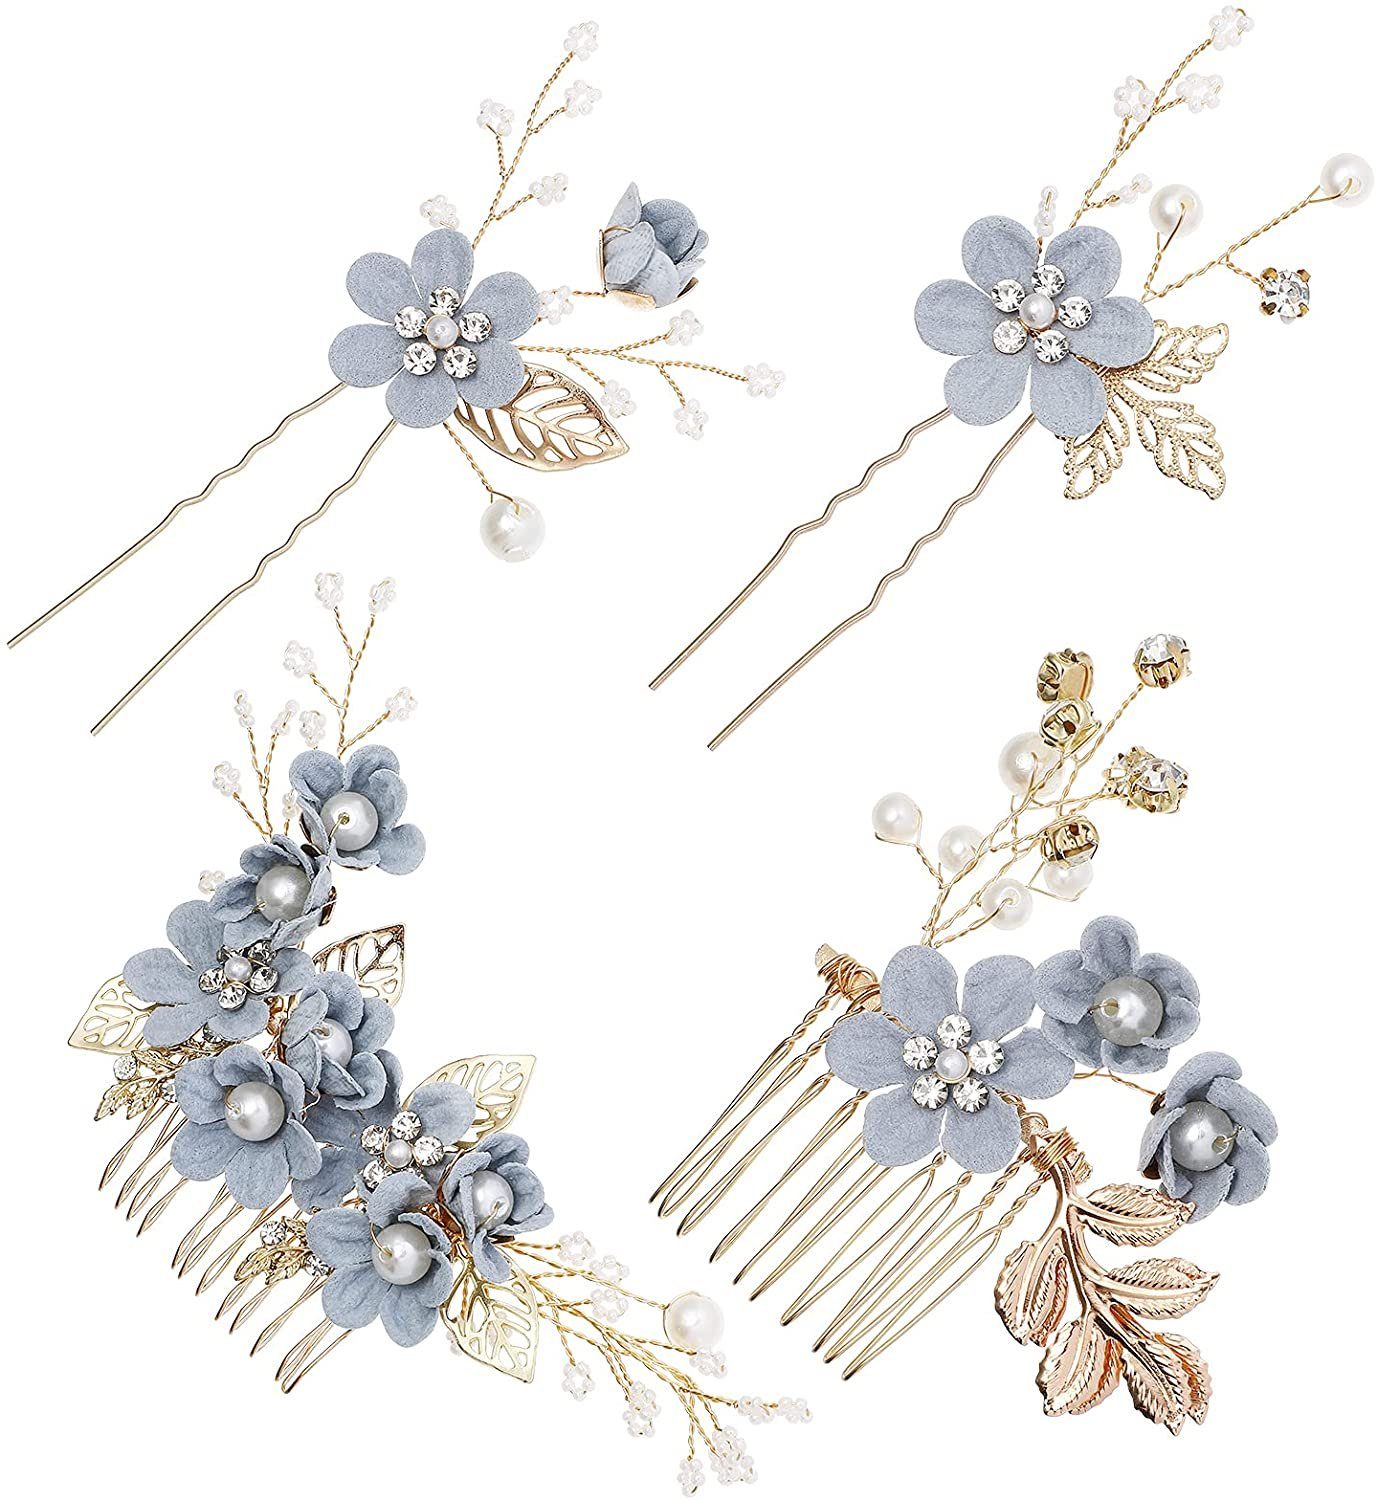 Braut(blau) zggzerg haarkämme zggzerg Haarspange 4 Strass stücke floral